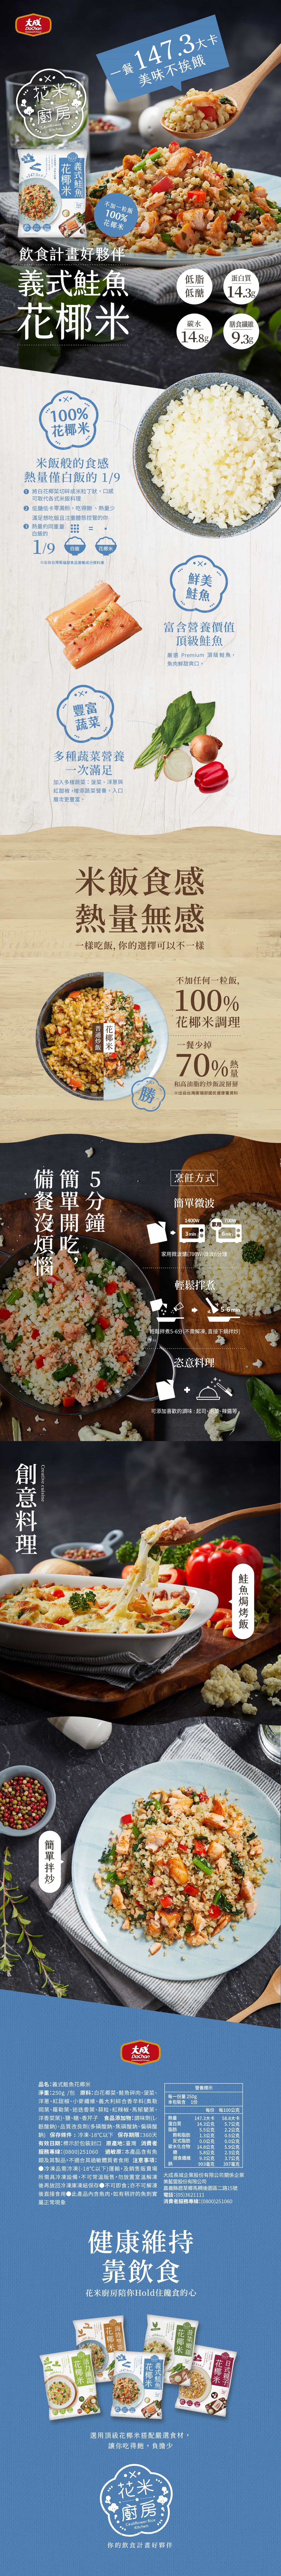 【大成食品】花米廚房花椰米即食調理包任選250g 花椰菜米